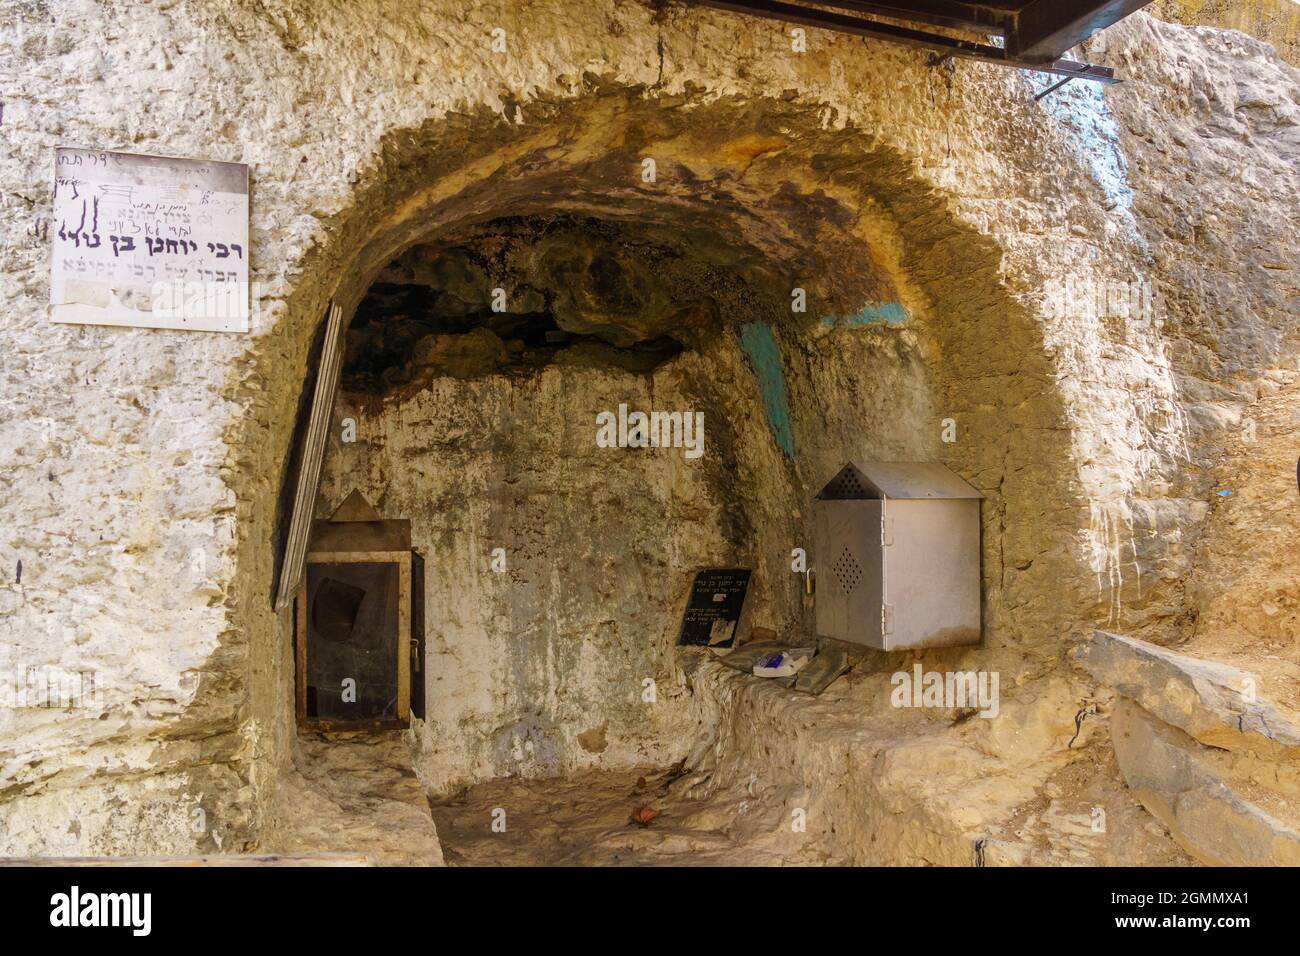 Tiberias, Israele - 12 settembre 2021: Vista della tomba e della grotta sepolcrale di Rabbi Yochanan ben Nuri, una tanna (vissuto i e II secoli). Tiberias, io Foto Stock